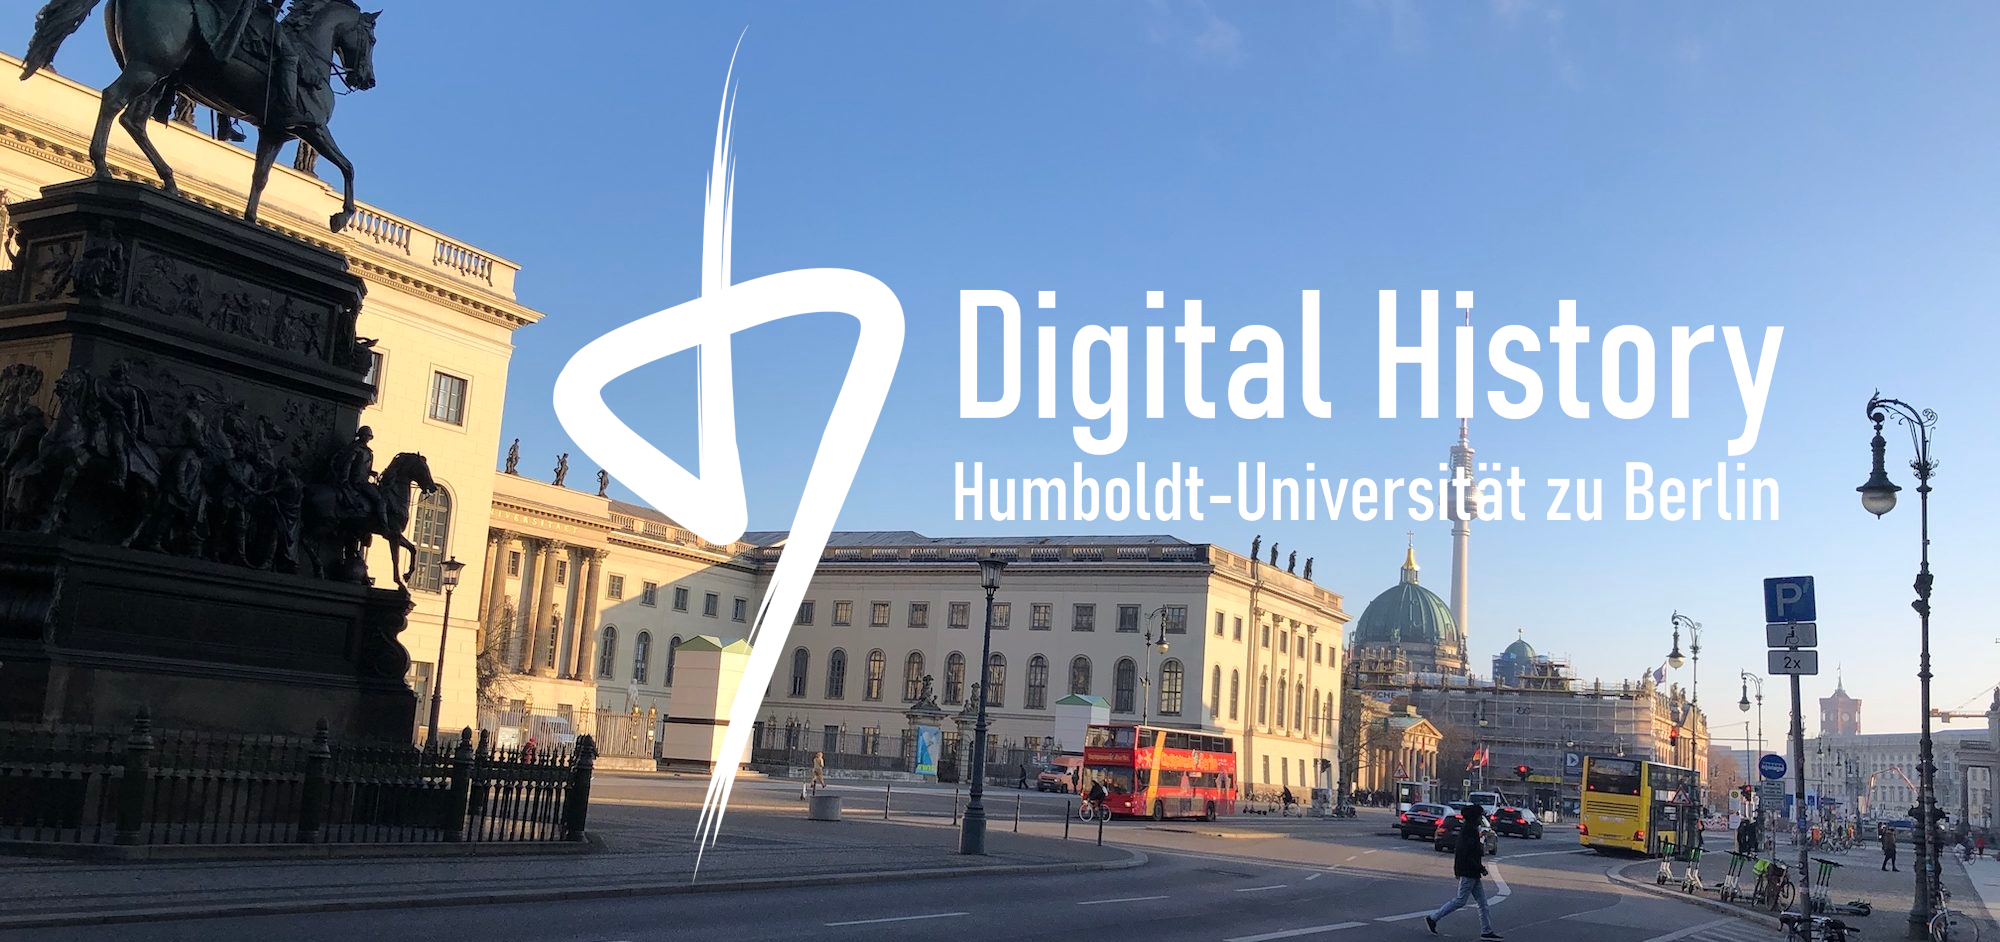 Digital History (Humboldt-Universität zu Berlin)